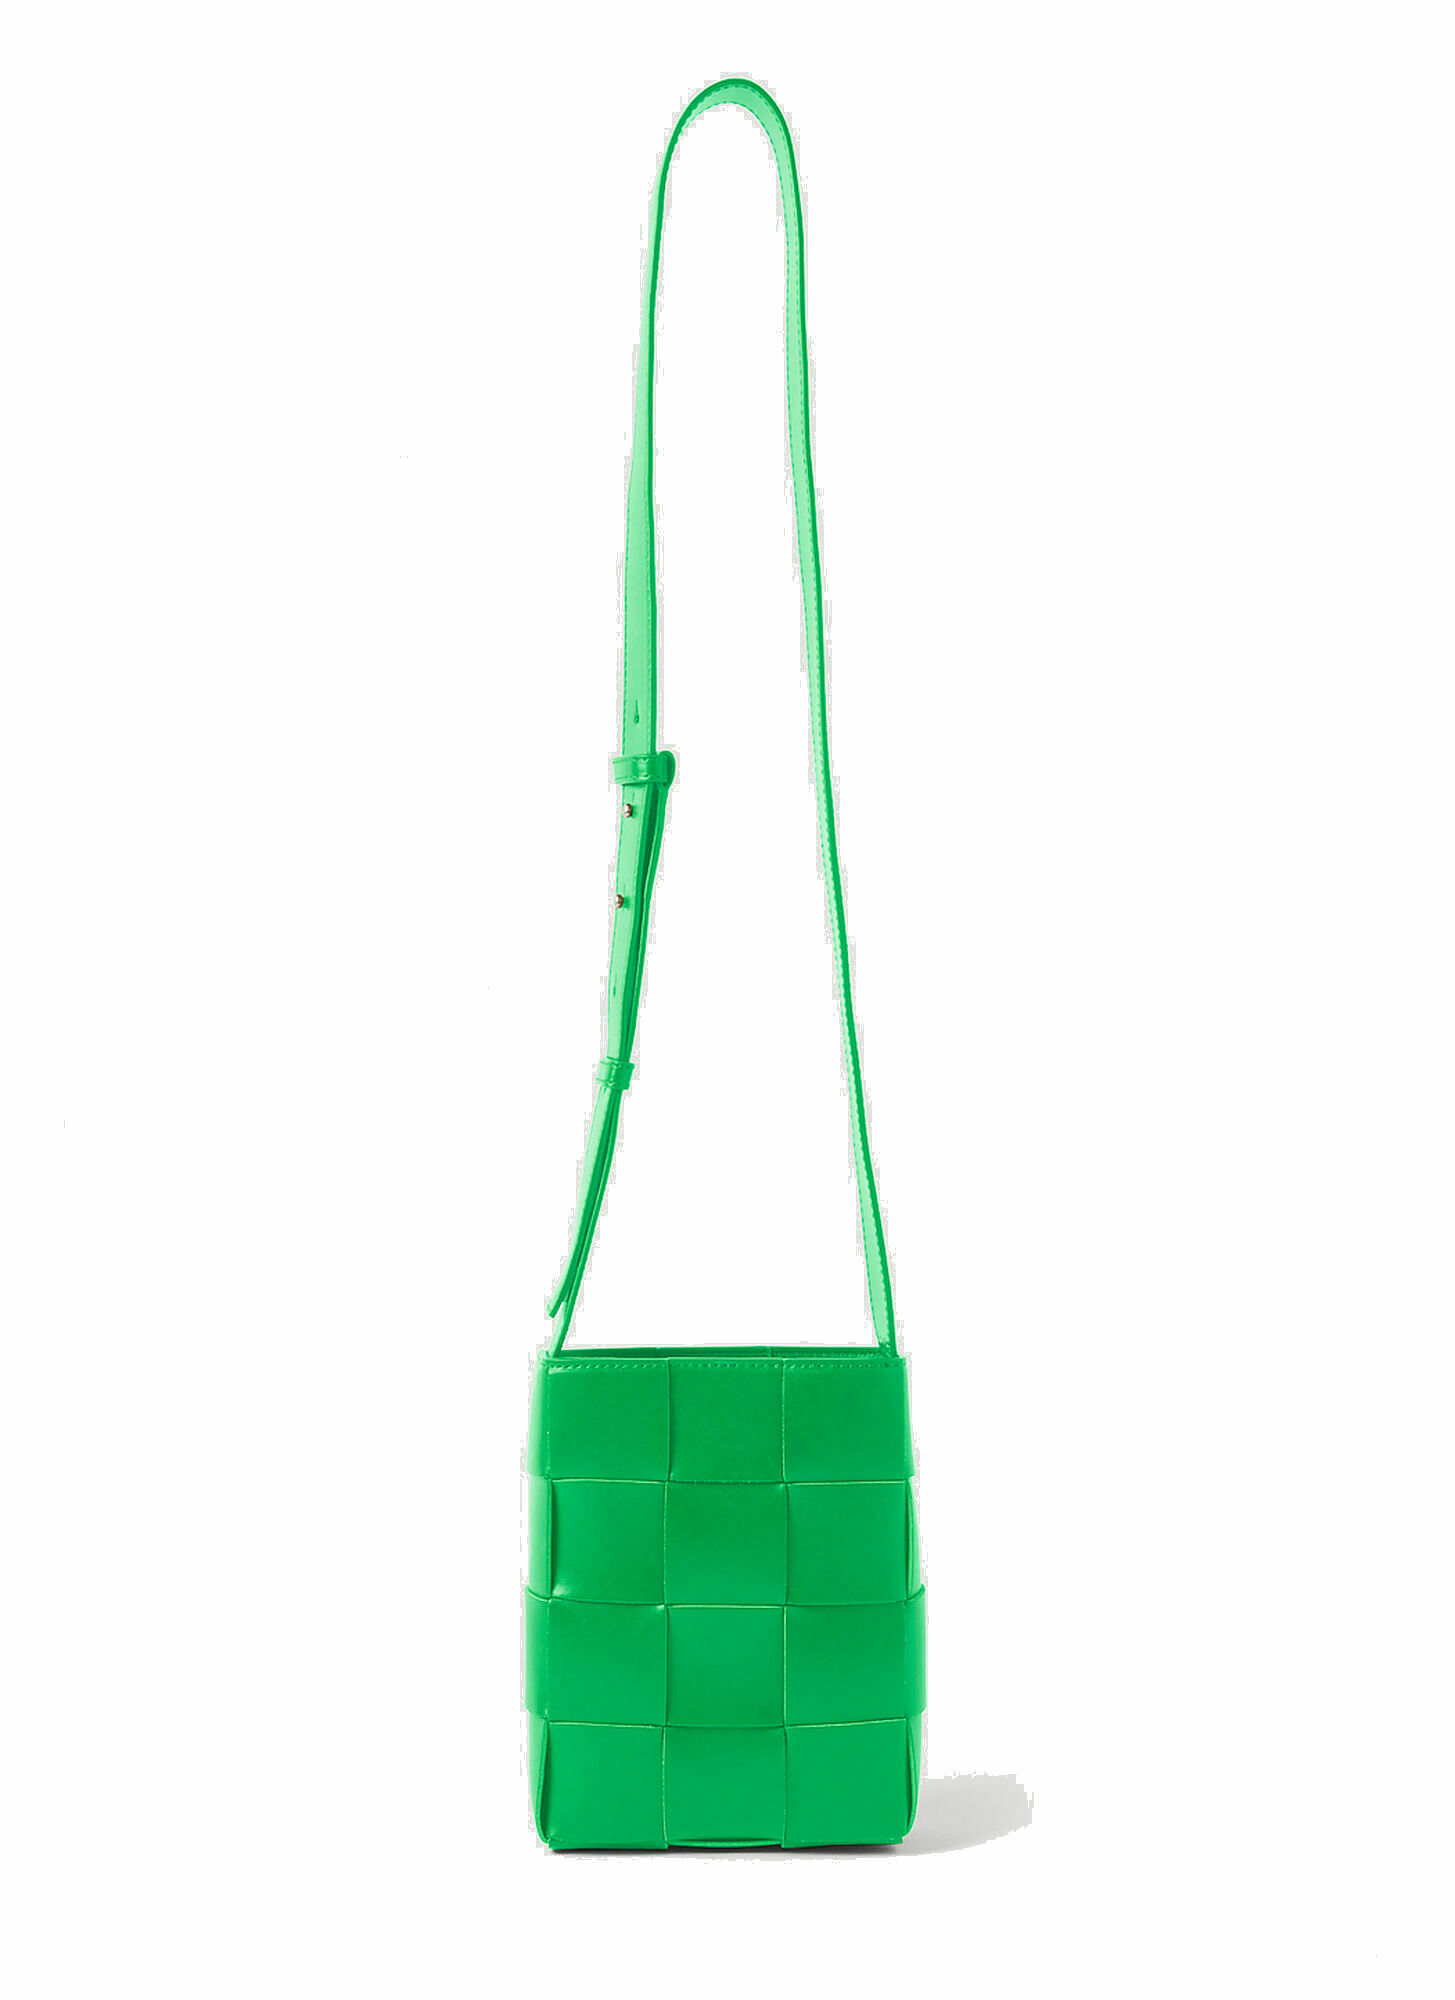 Photo: Intreccio Phone Pouch Crossbody Bag in Green